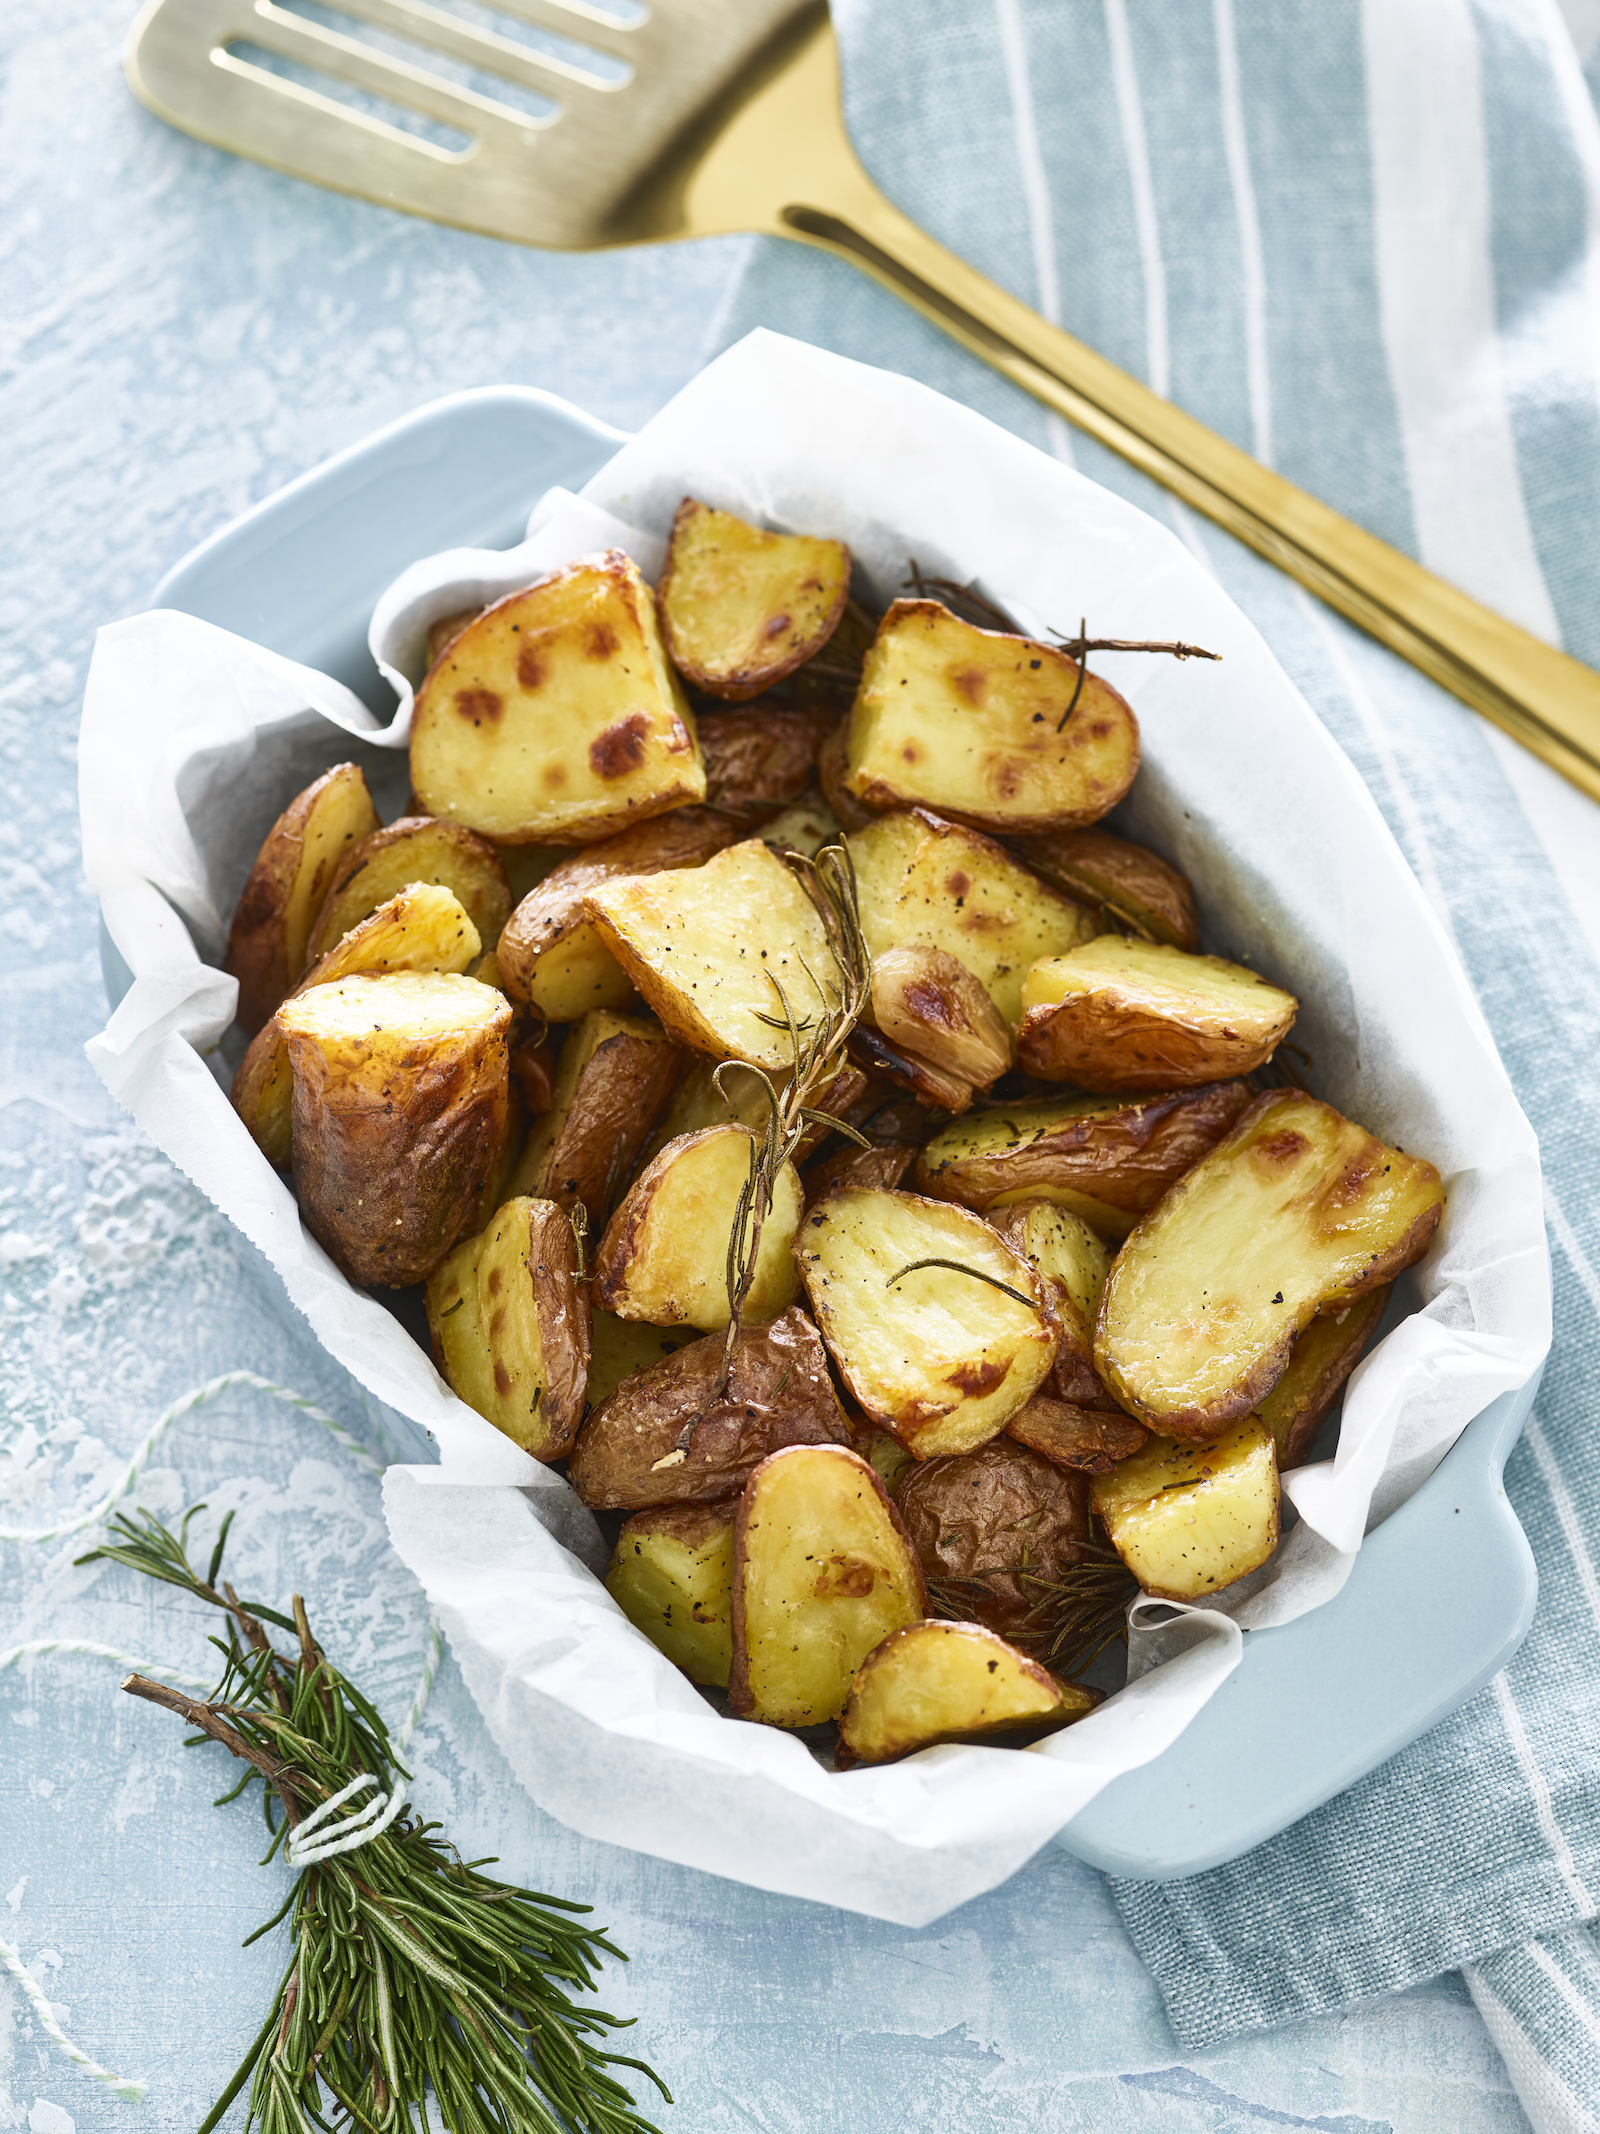 Aardappels met schil uit de oven